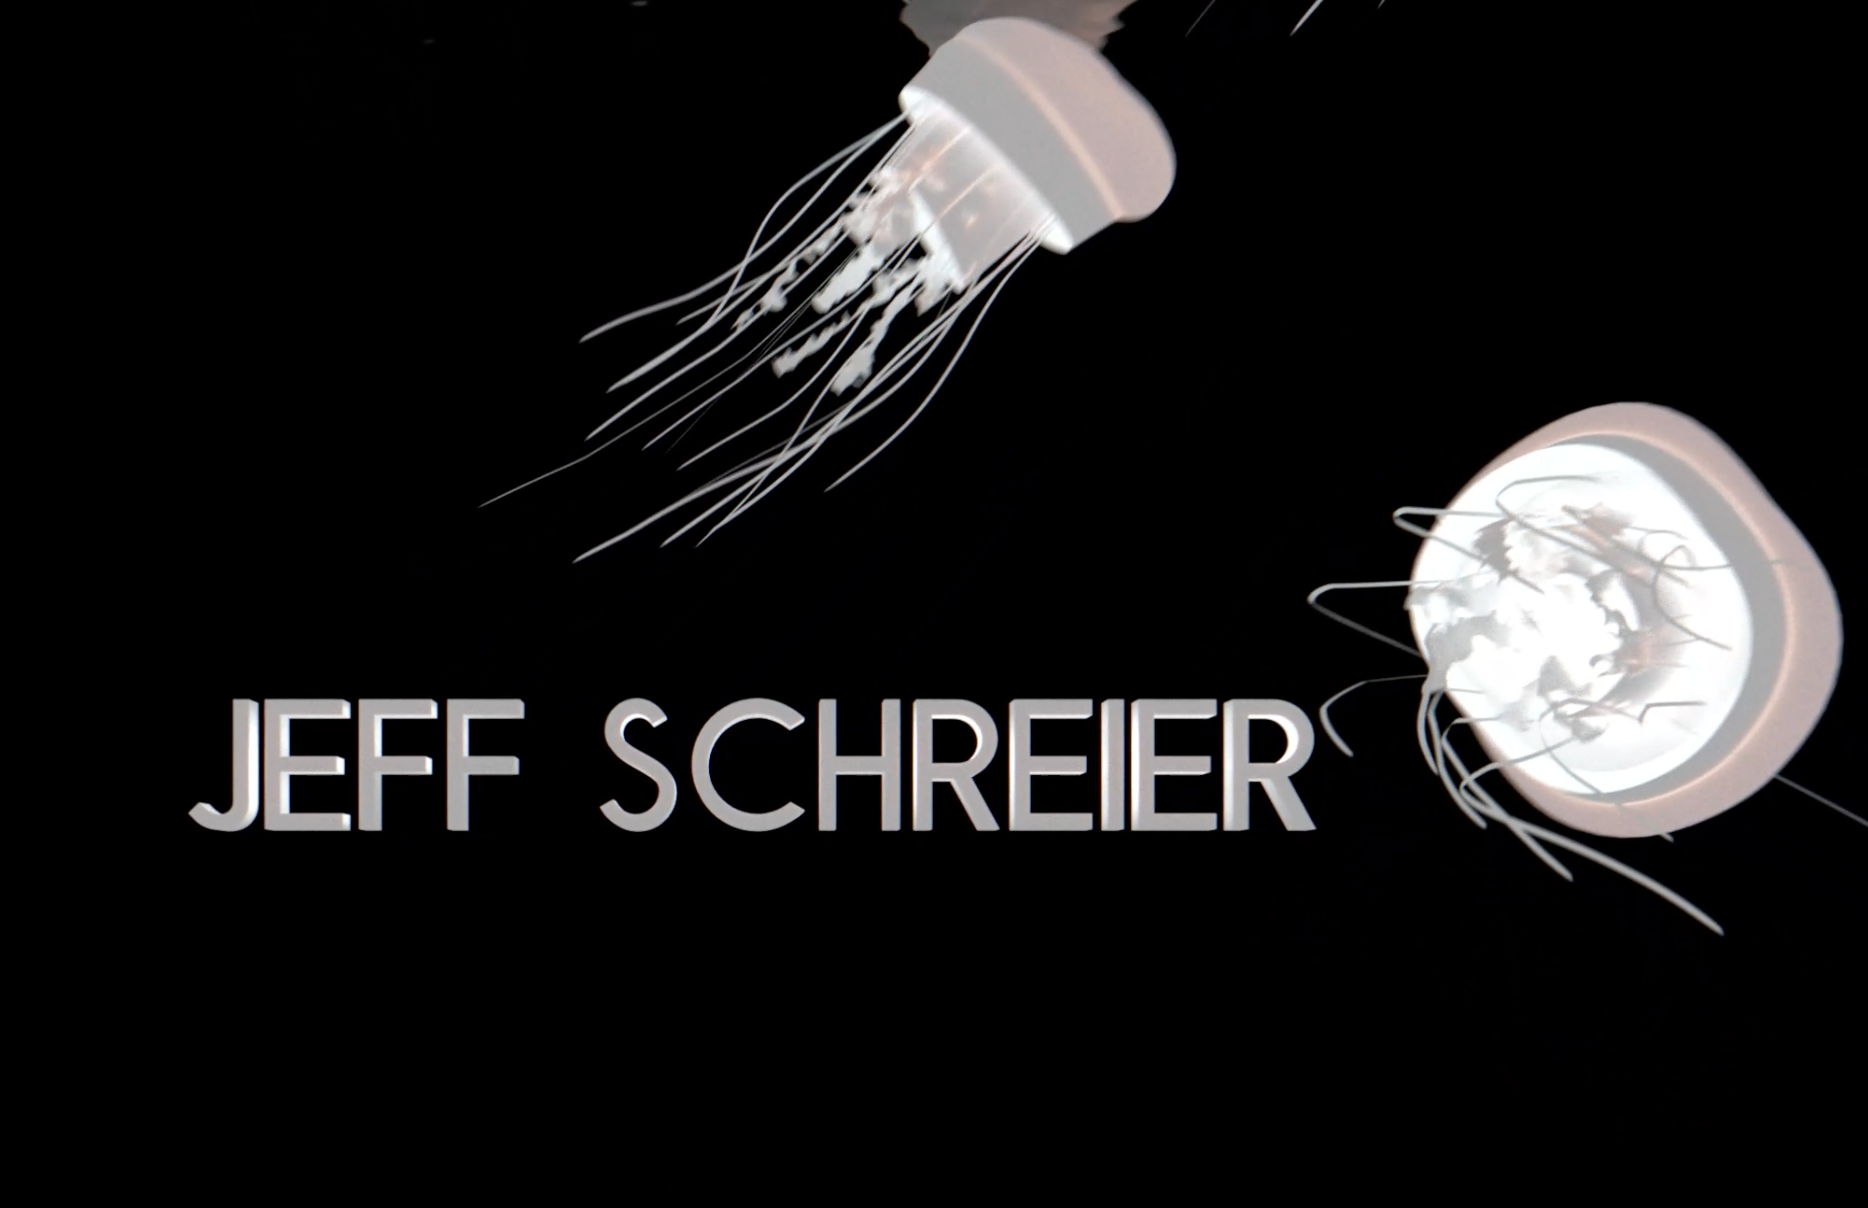 Jeff Schreier Cutting Edge Designs